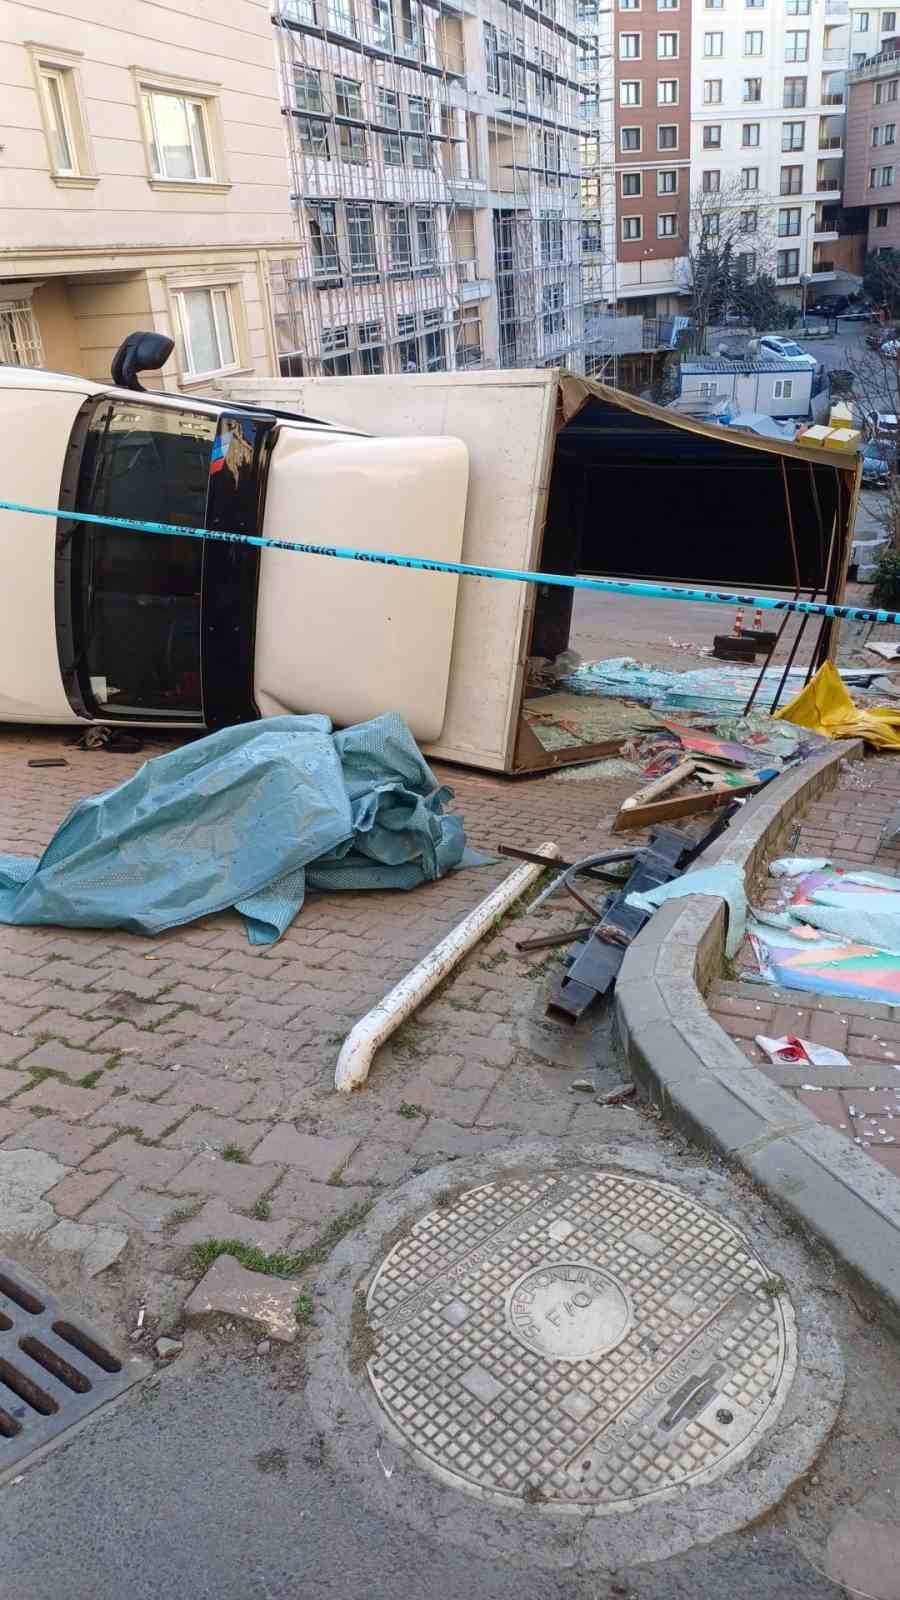 Beşiktaş’ta cam yüklü kamyon yola böyle devrildi: Tonlarca cam yola saçıldı
